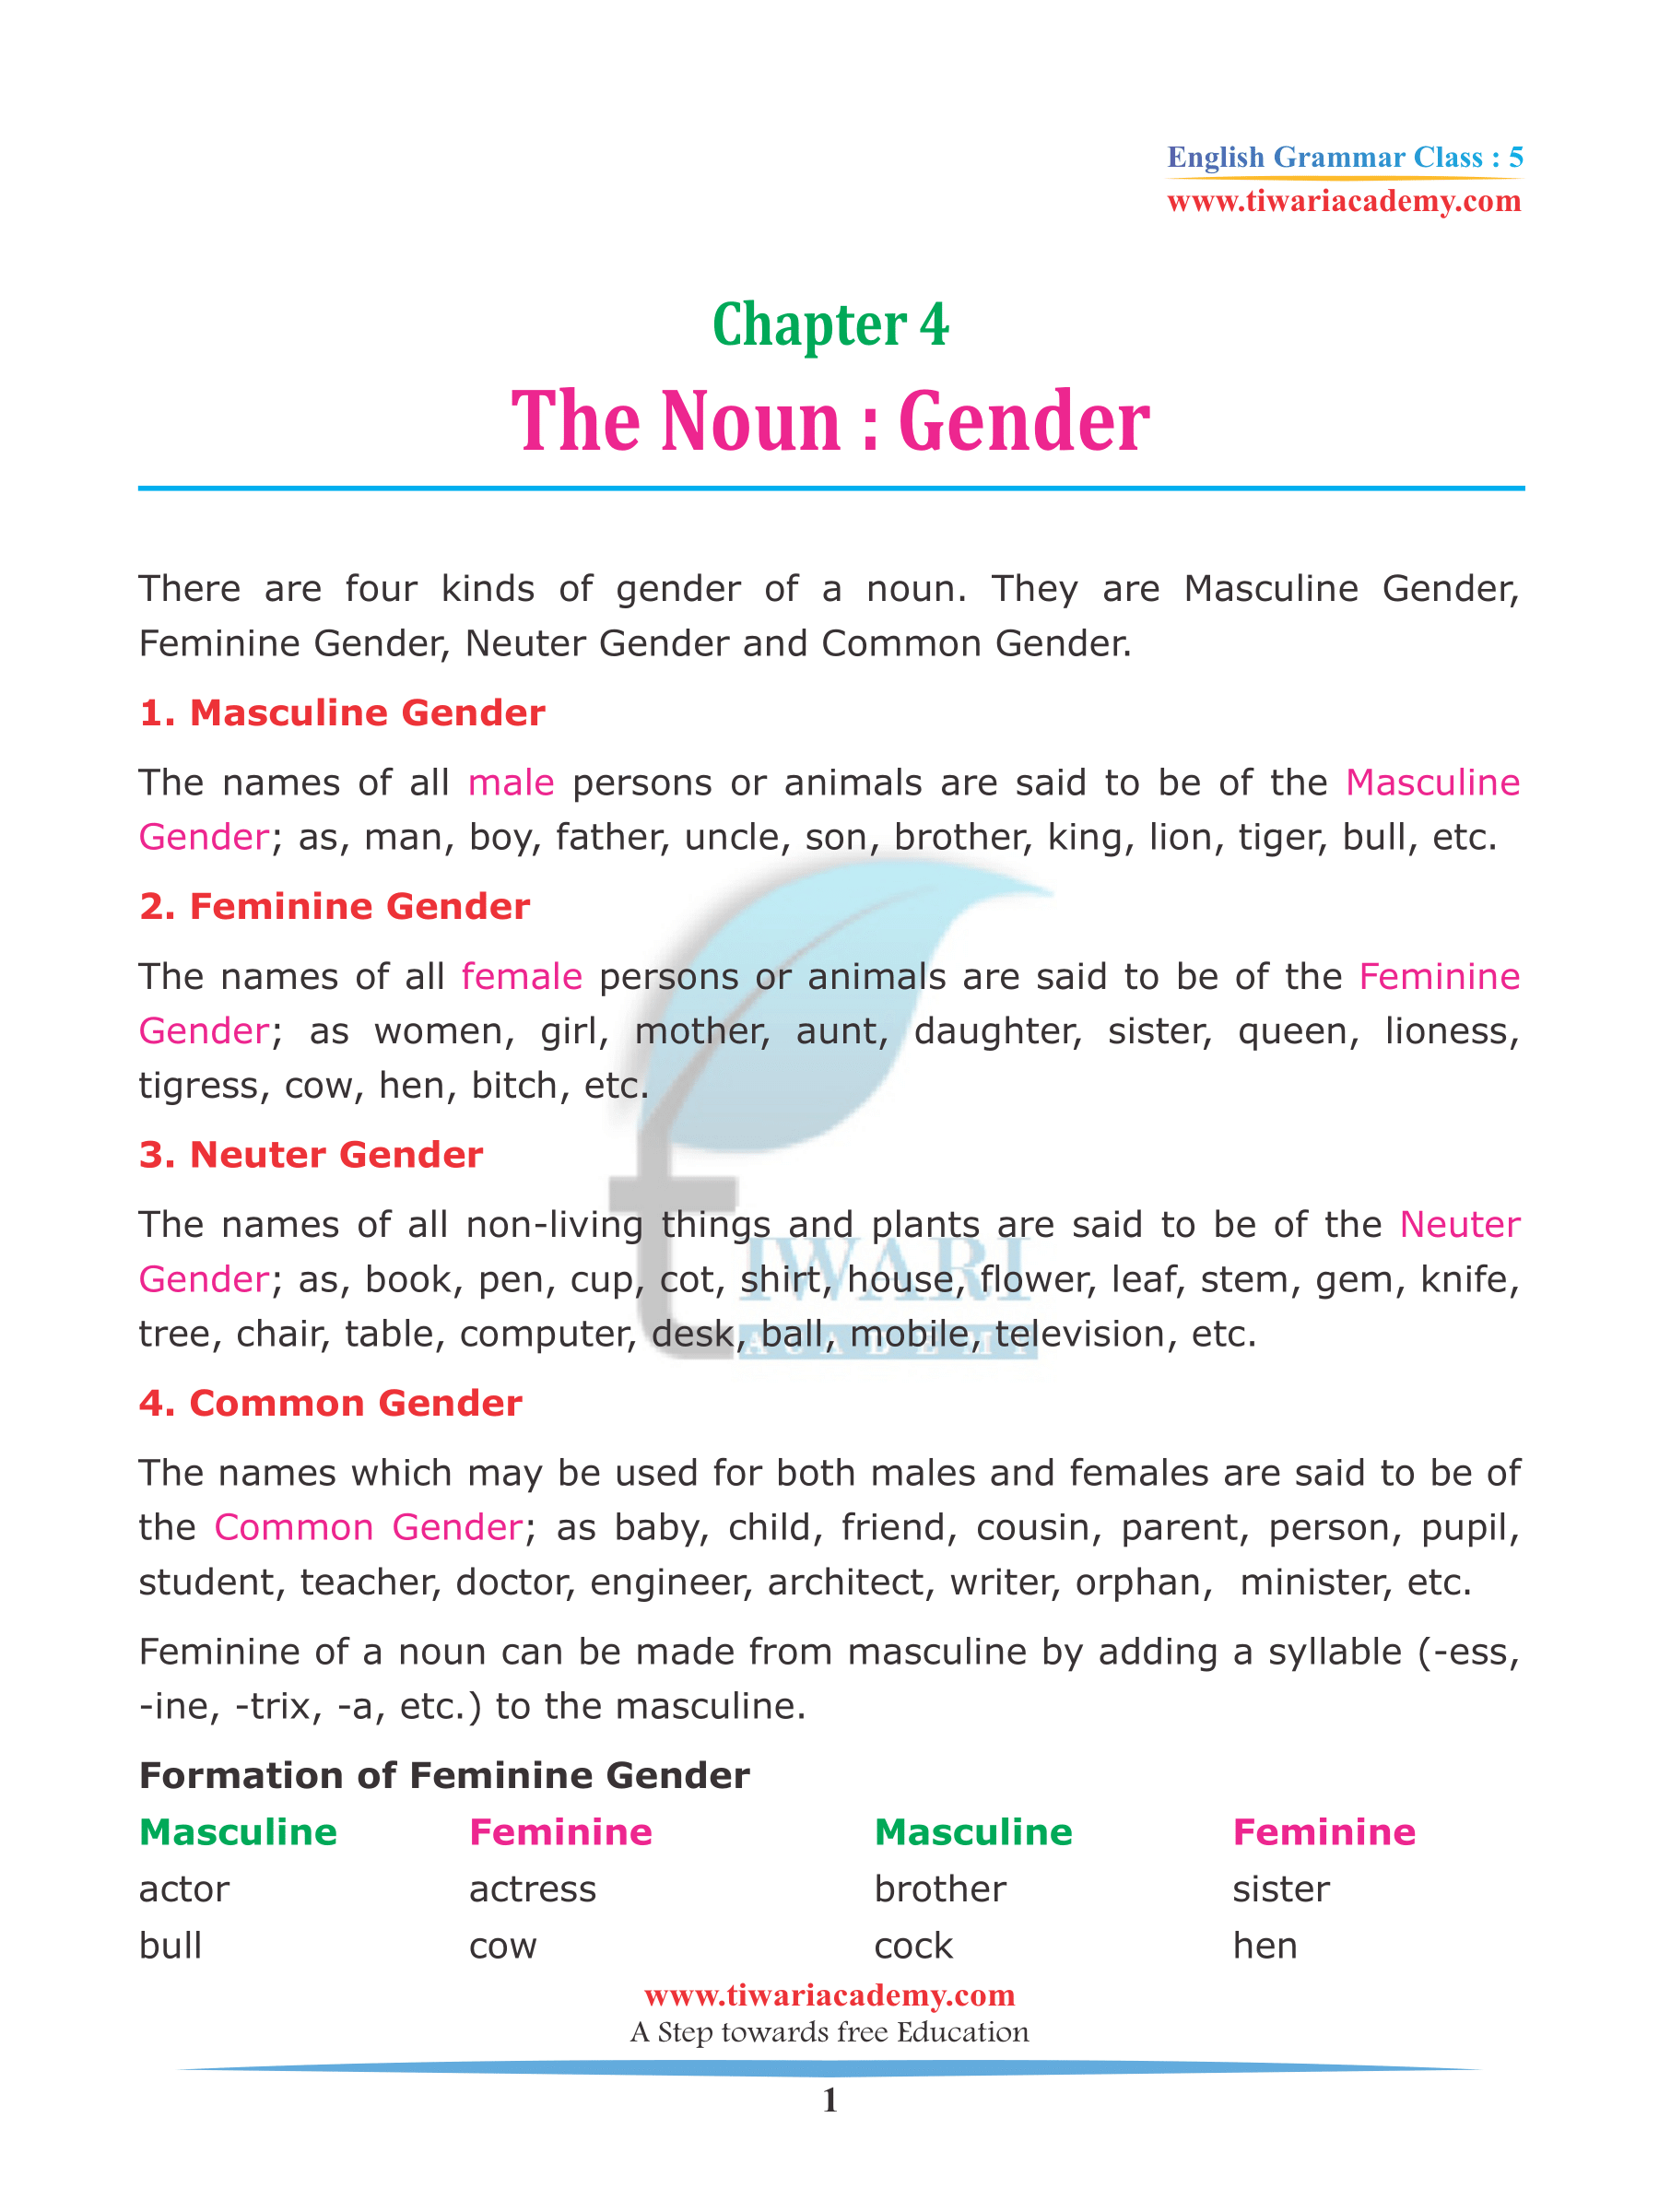 NCERT Solutions for Class 5 English Grammar Chapter 4 The Noun Gender